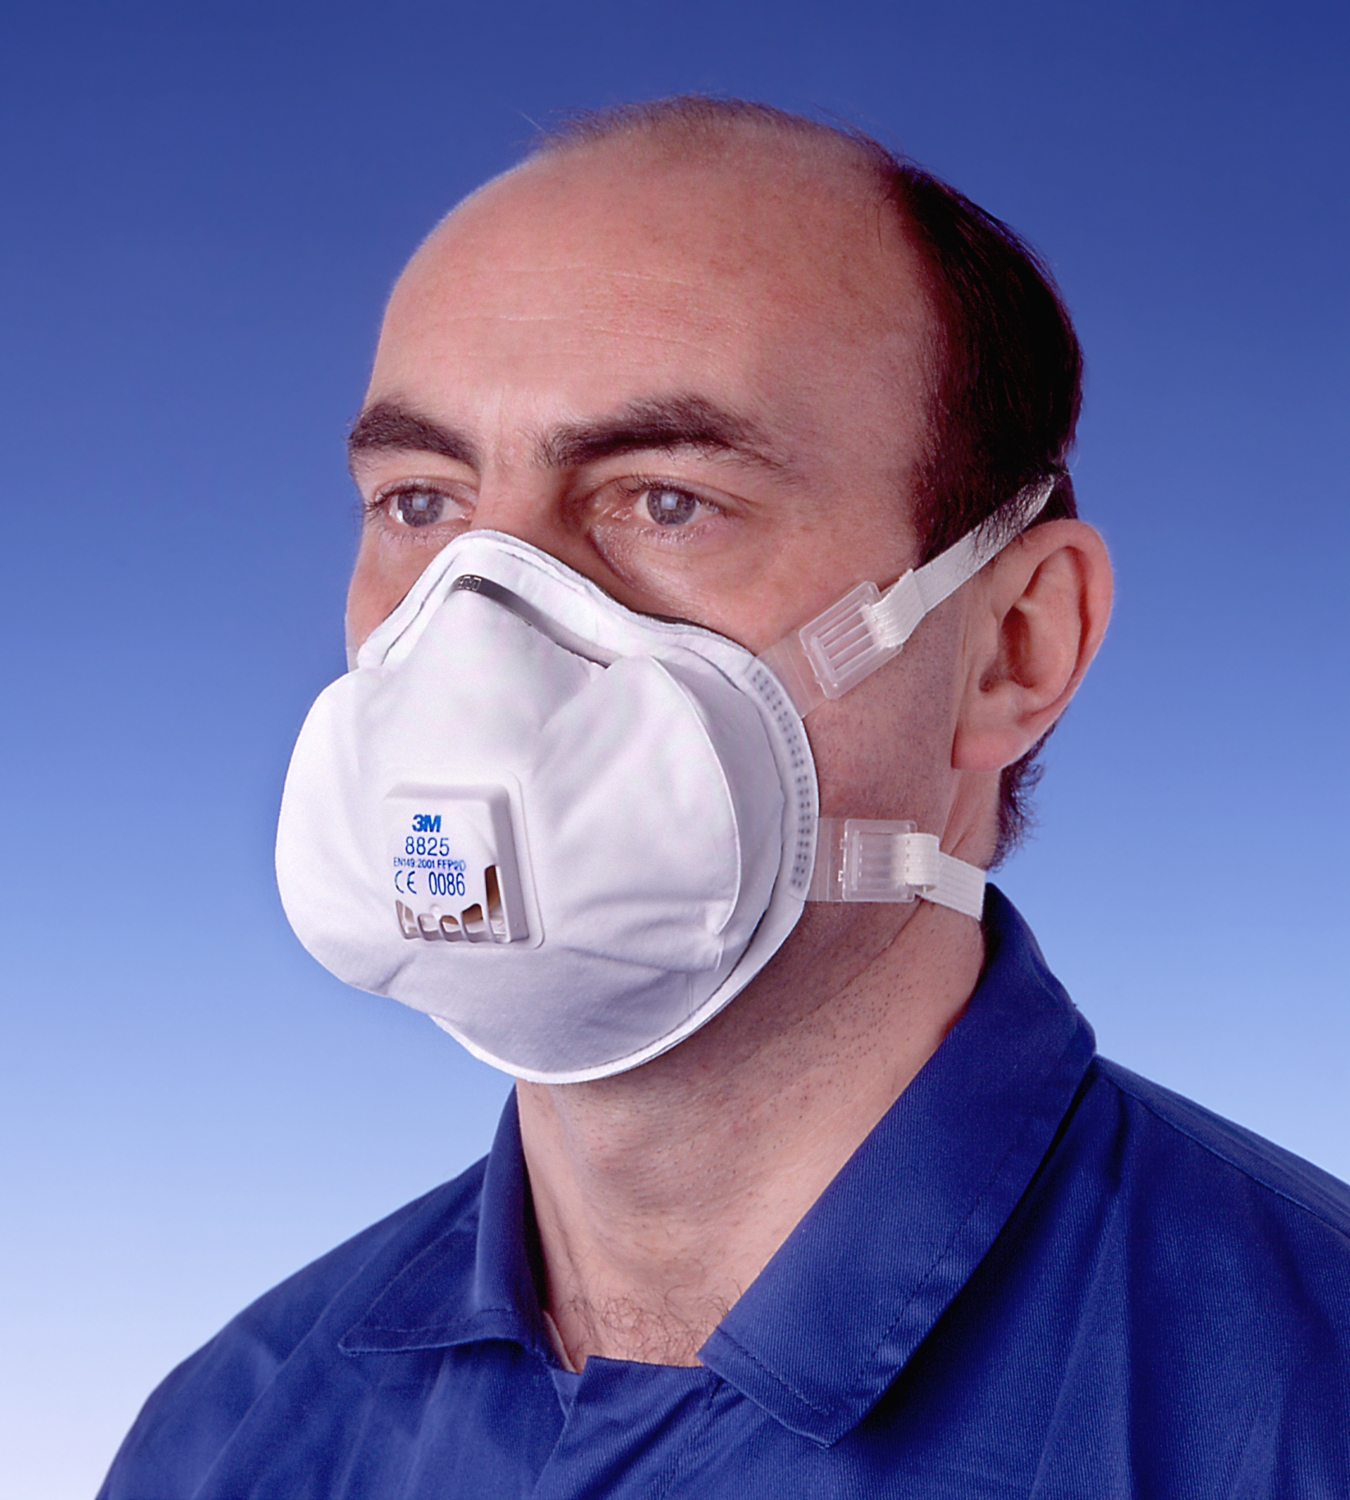 Masque anti-poussière jetable FFP1, lot de 2